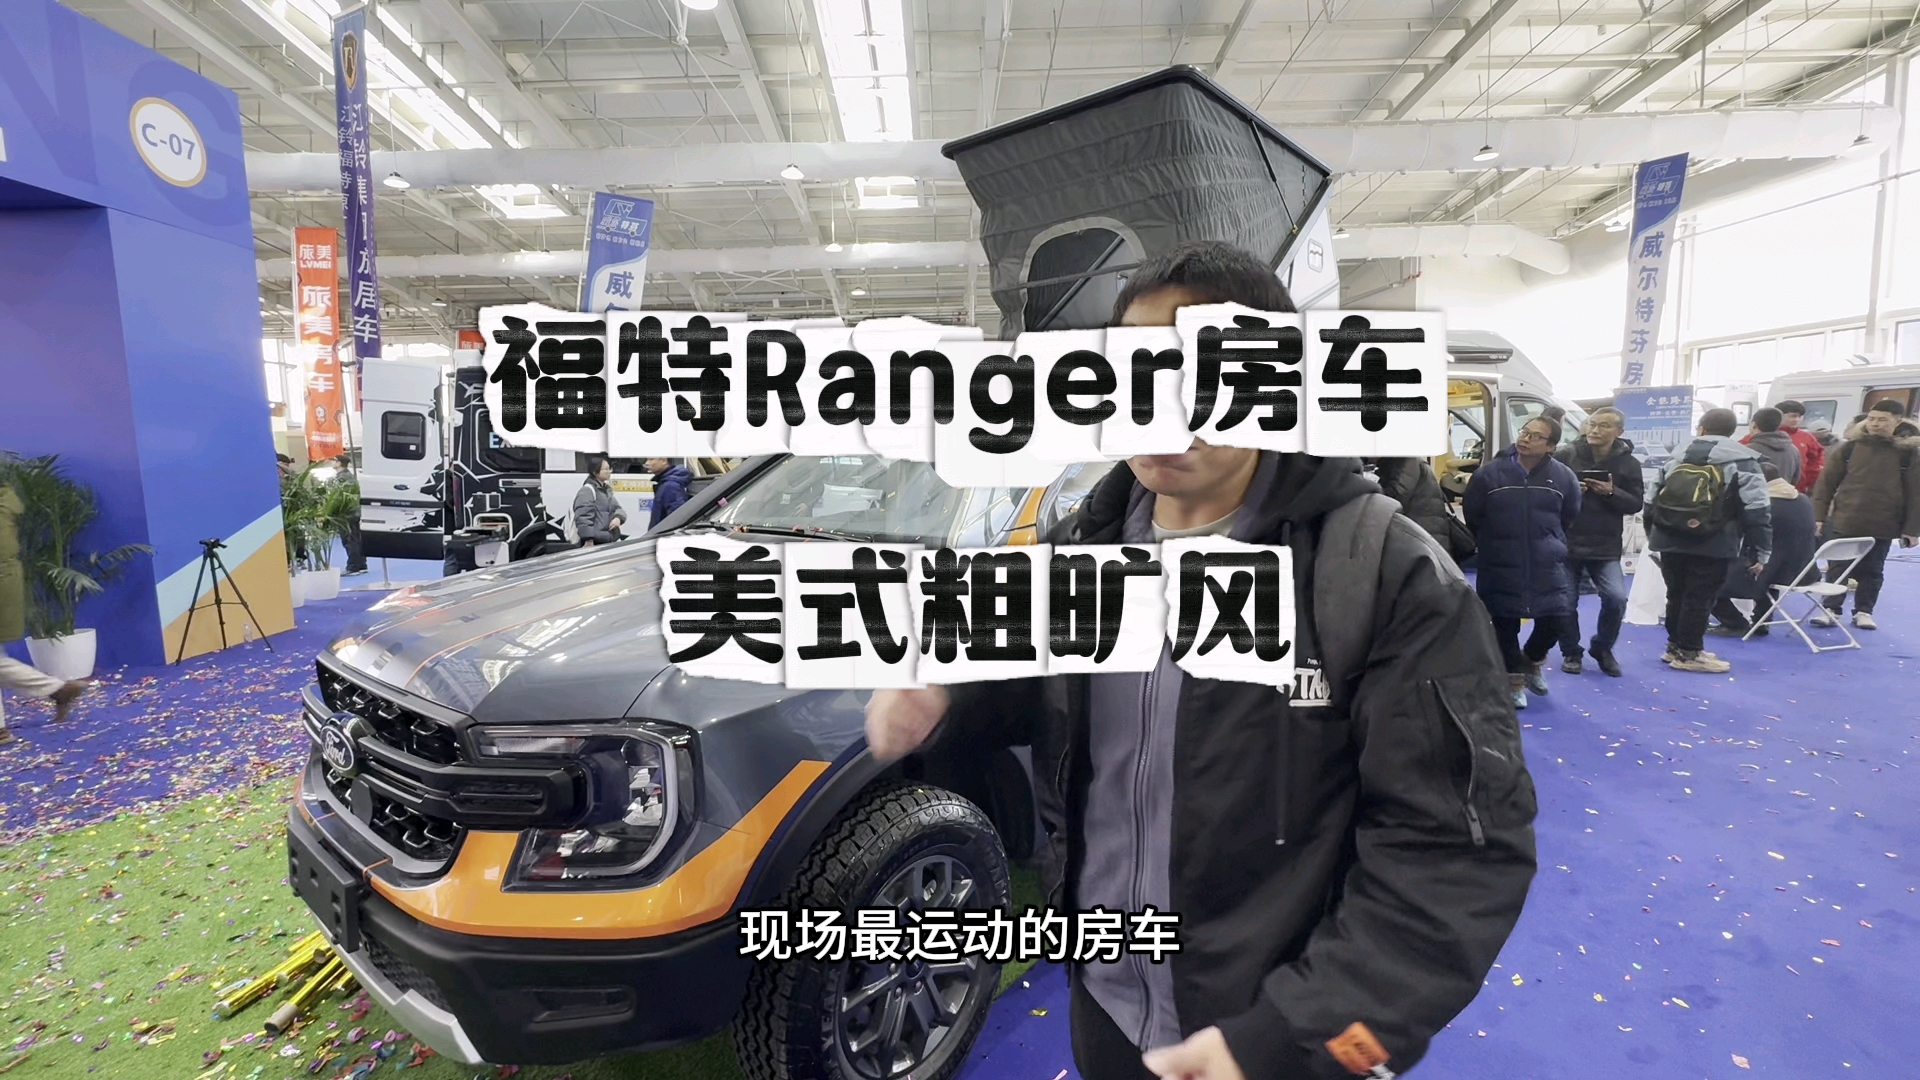 房车也可以很运动！福特Ranger皮卡房车来北京国际房车露营展览会了！日常代步 轻度旅居，这车玩的就是粗旷！